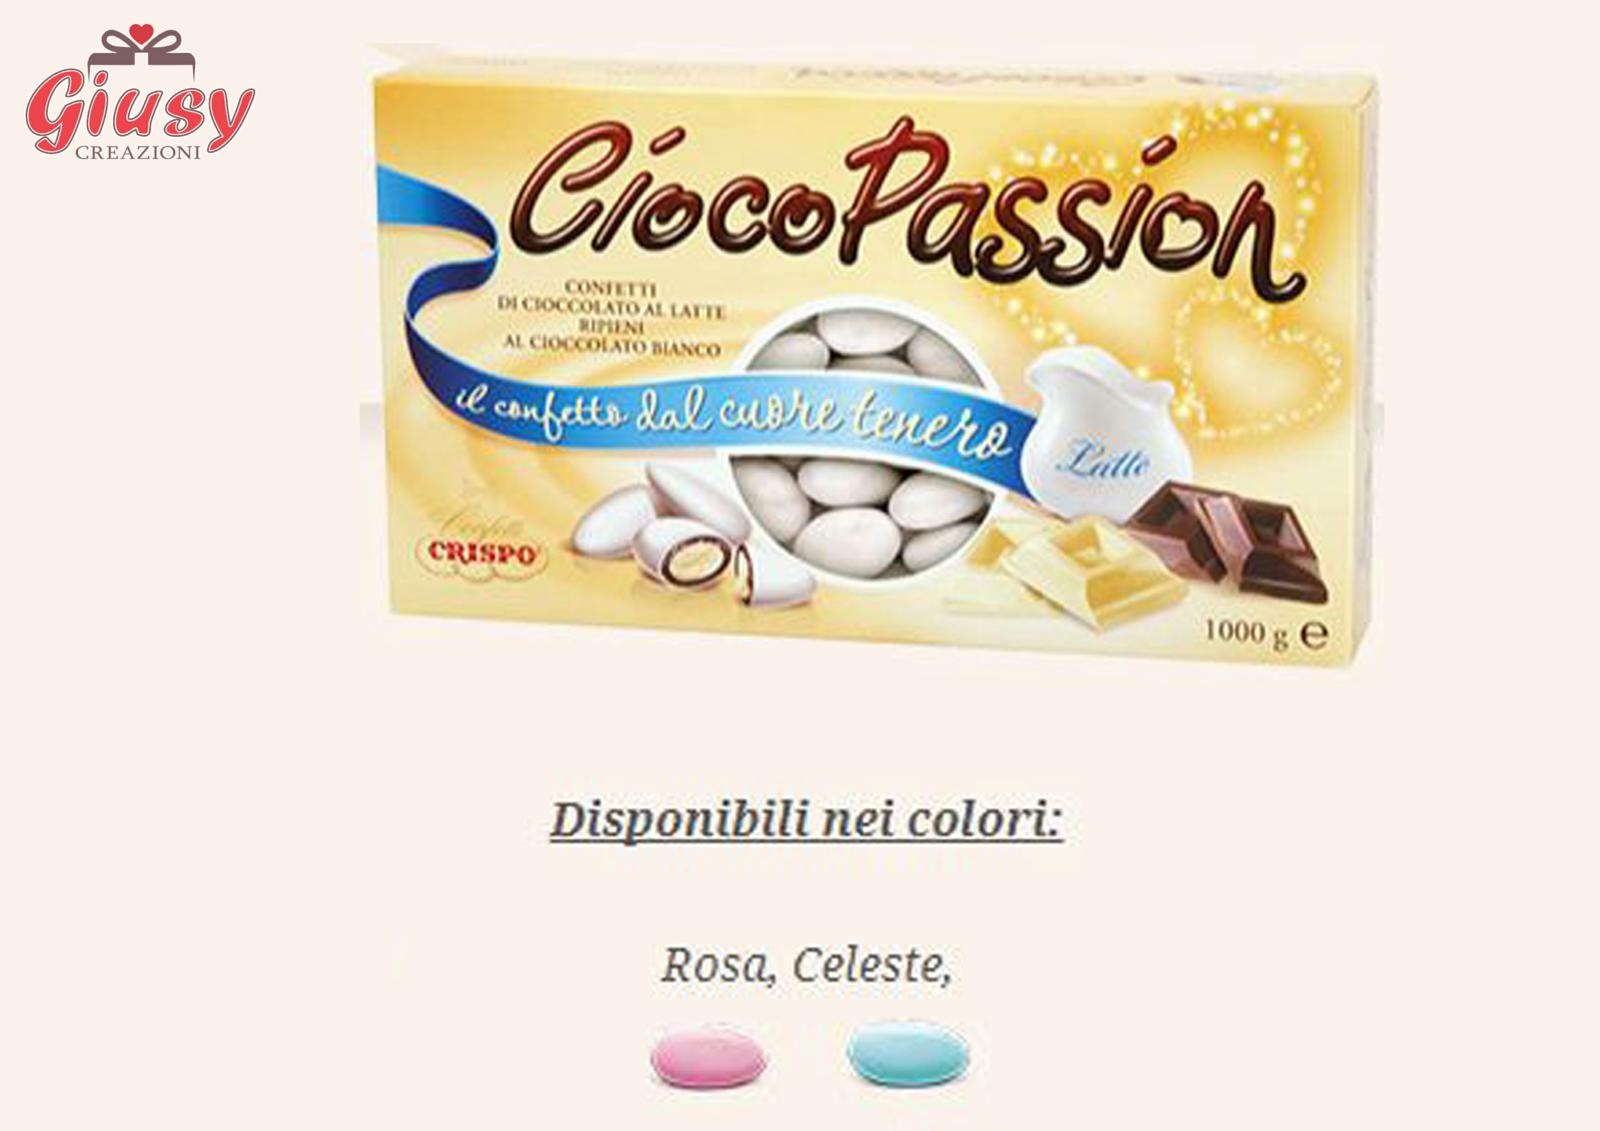 Confetti CiocoPassion Celeste Di Cioccolato Al Latte Ripieni Al Cioccolato Bianco Confezione 1Kg